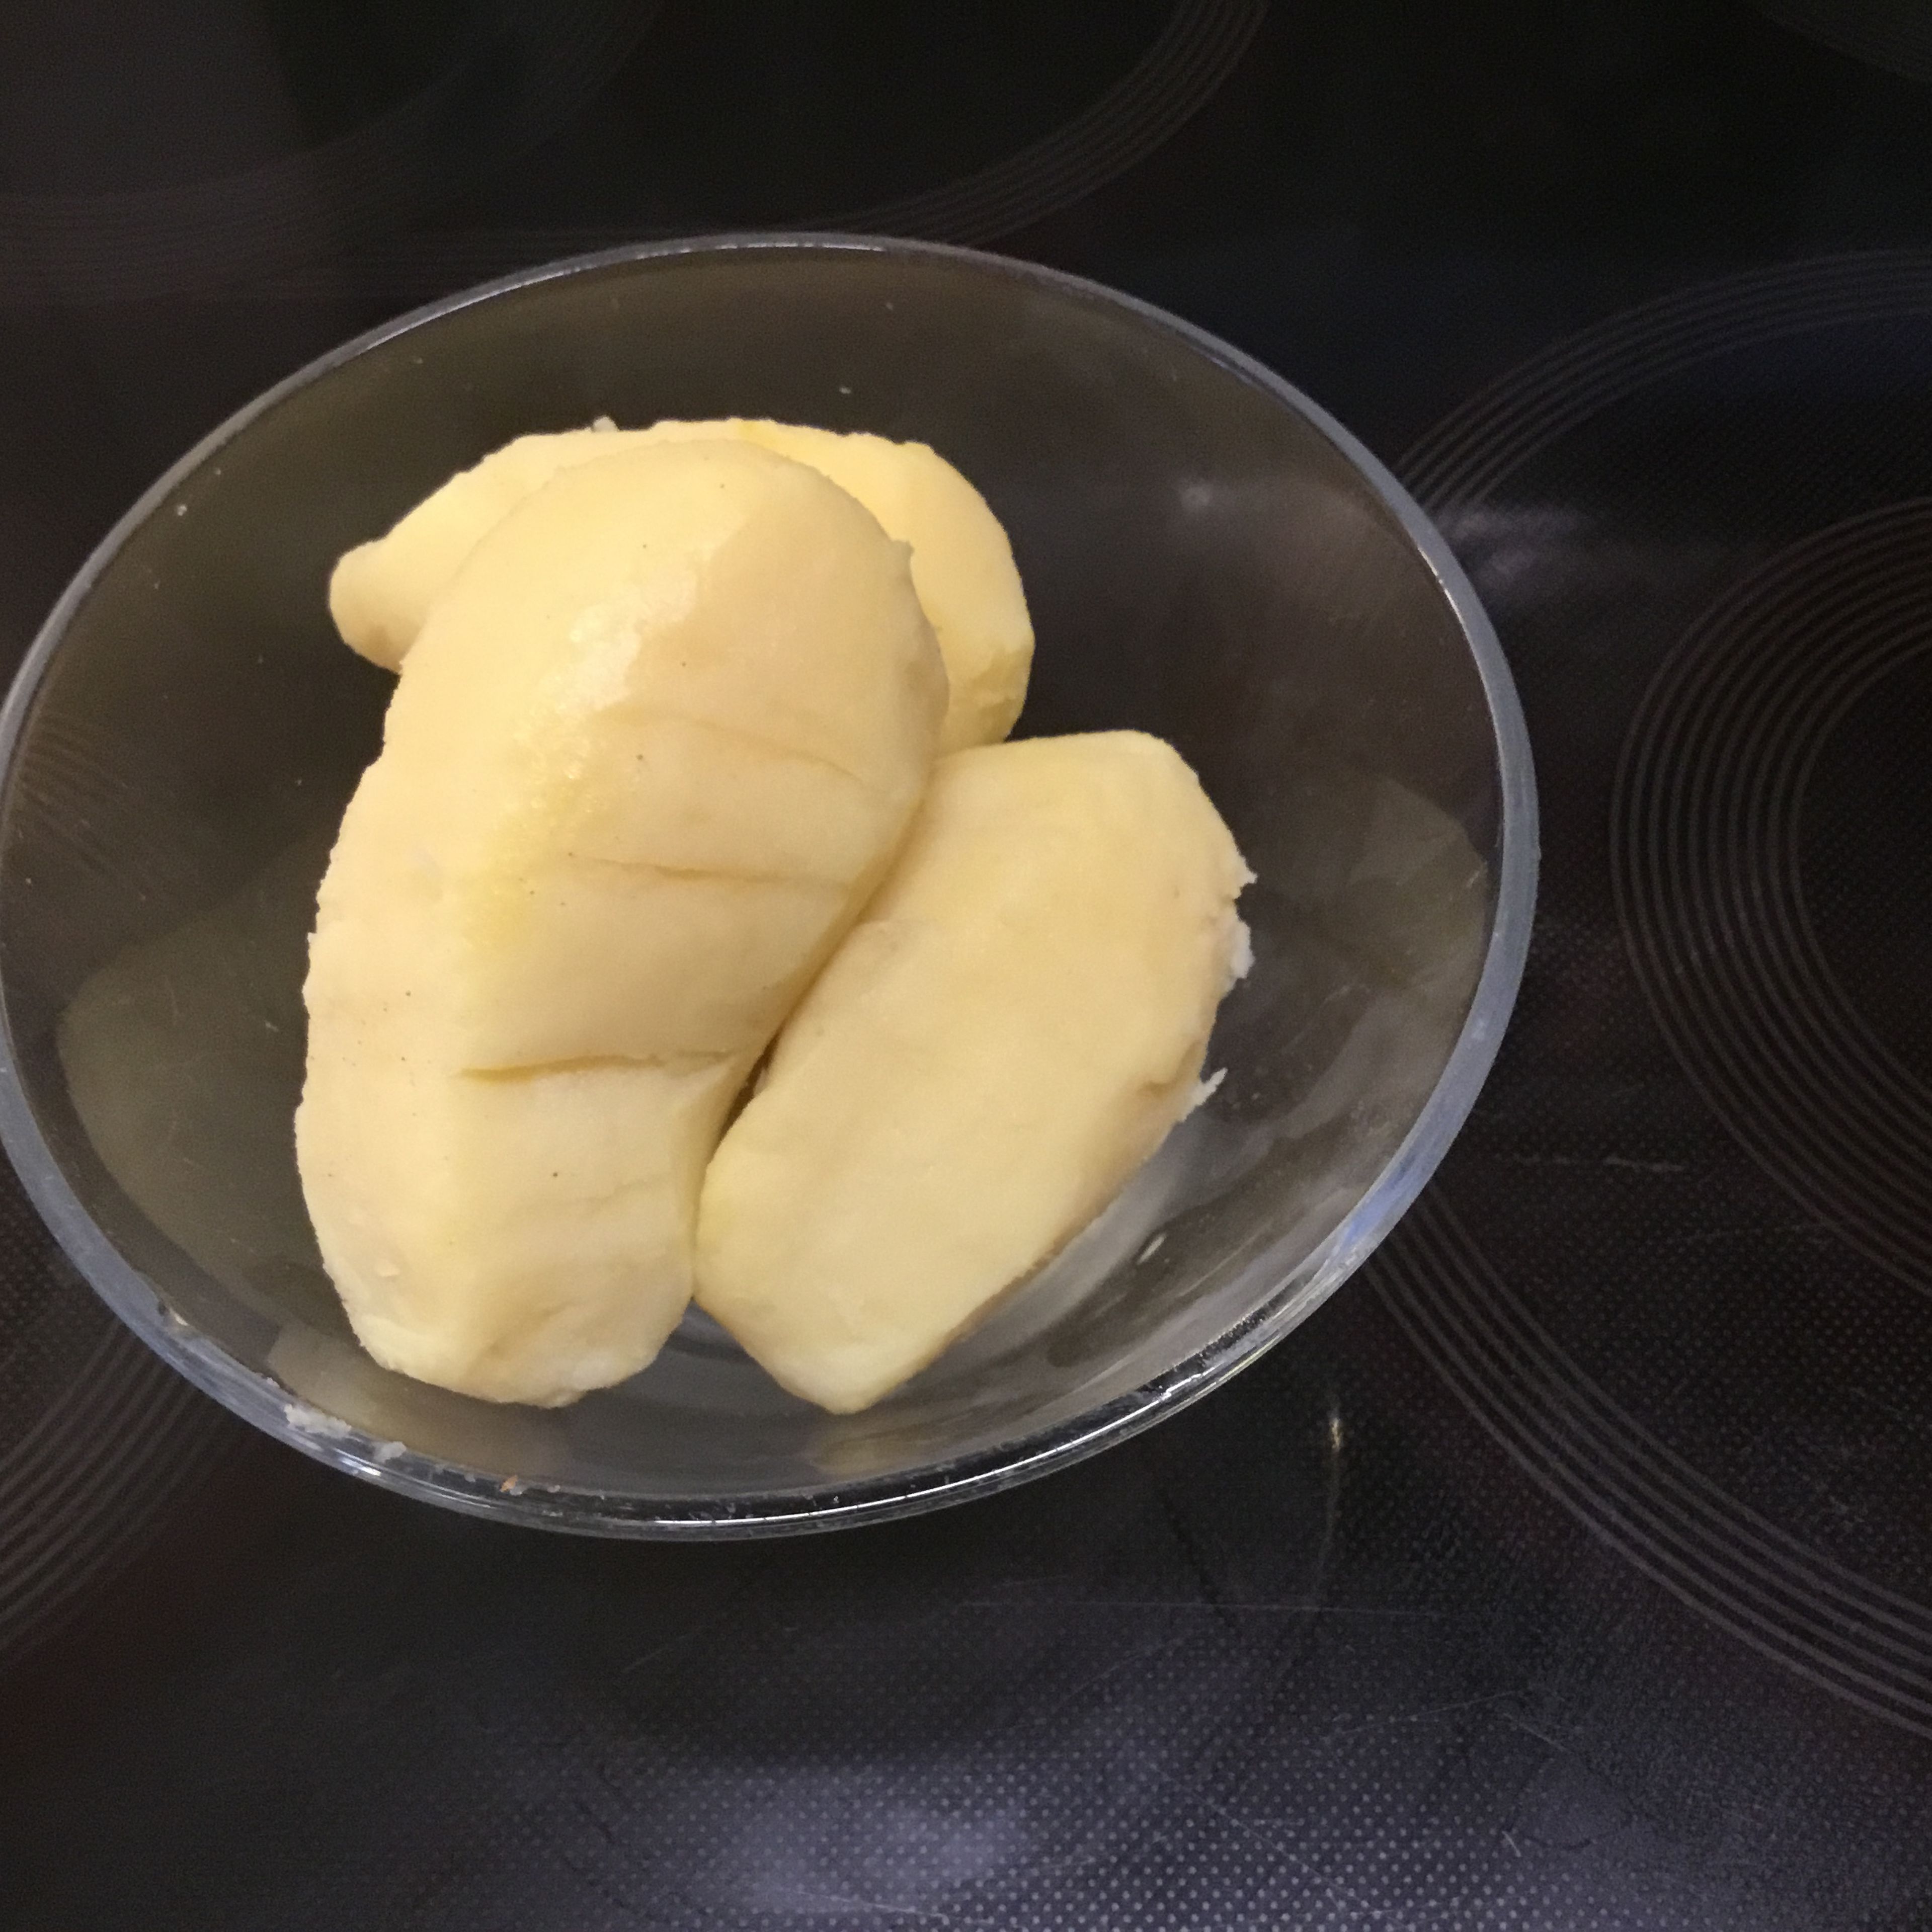 Gekochte Bratkartoffeln schälen und Zwiebel schälen und in kleine Würfel schneiden. Eine Hälfte der Zwiebel für die Bratkartoffeln, die andere Hälfte für die Reherl.